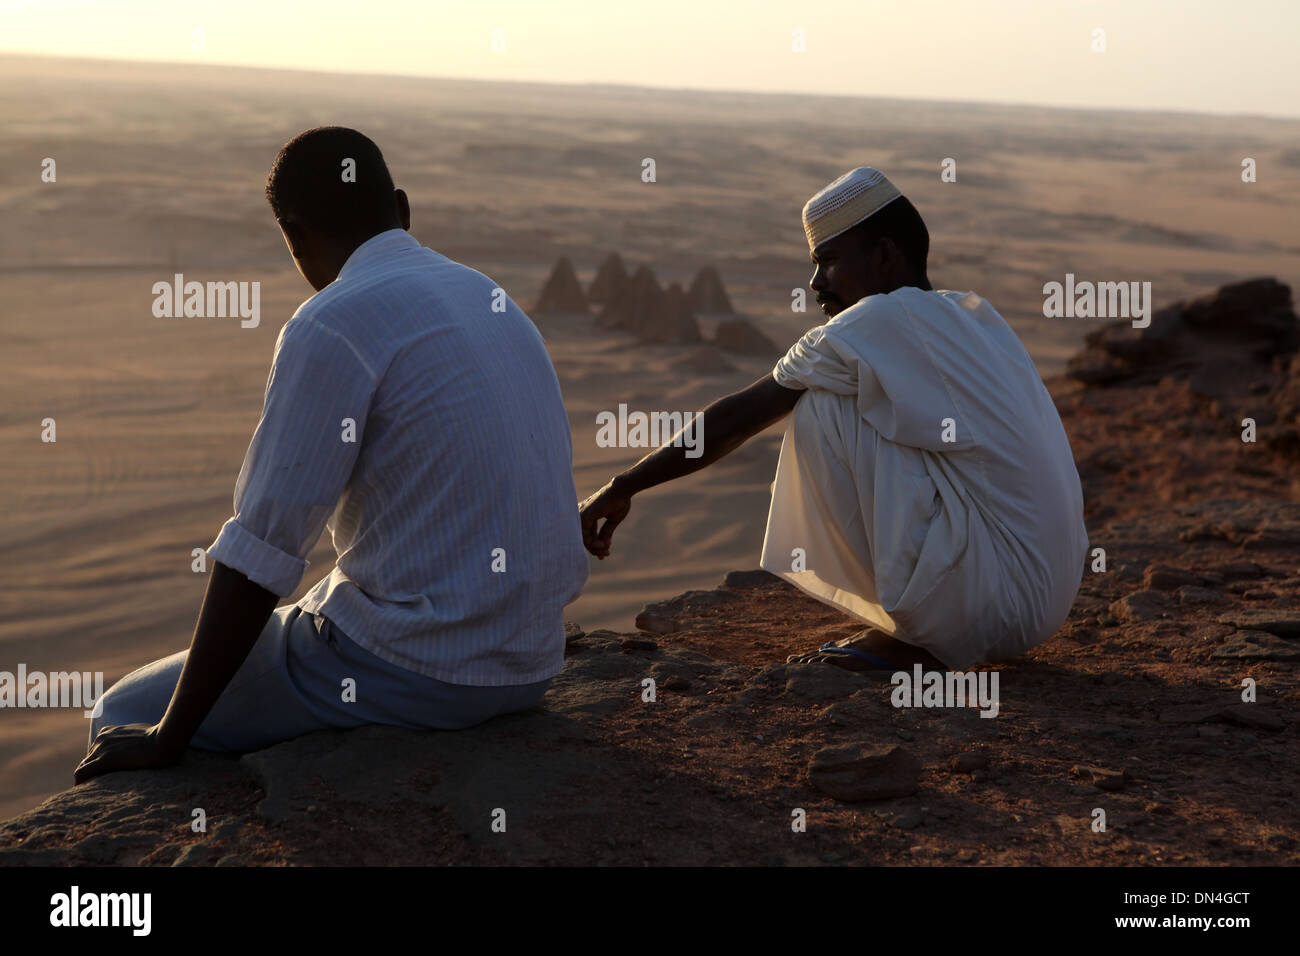 Nubian pyramids, Sudan. Stock Photo